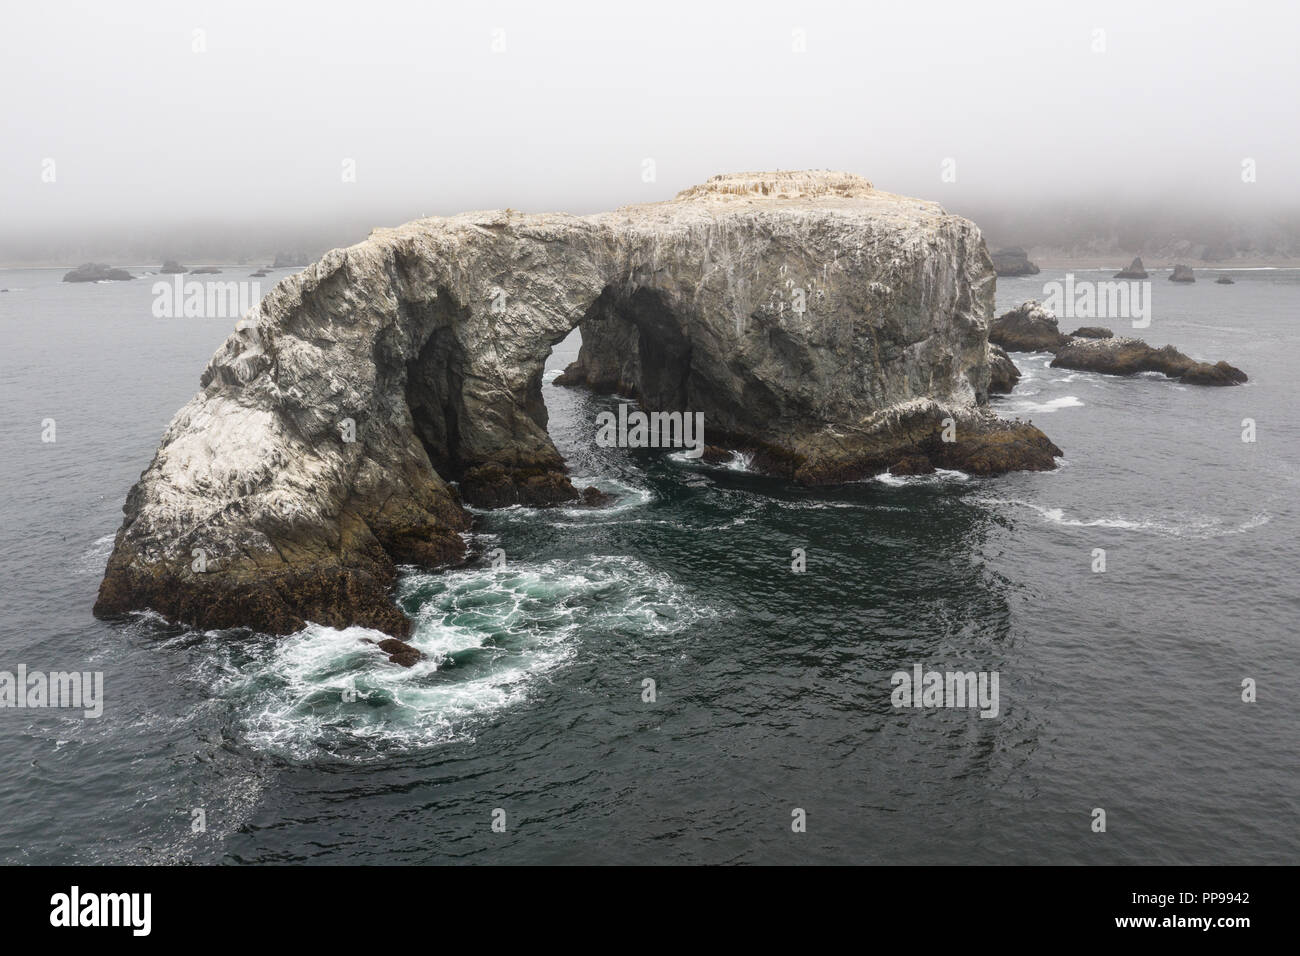 Una enorme pila de mar, formada por las potencias erosiva del agua y el viento, descansa cerca del salvaje, cubierto de niebla costa del norte de California. Foto de stock